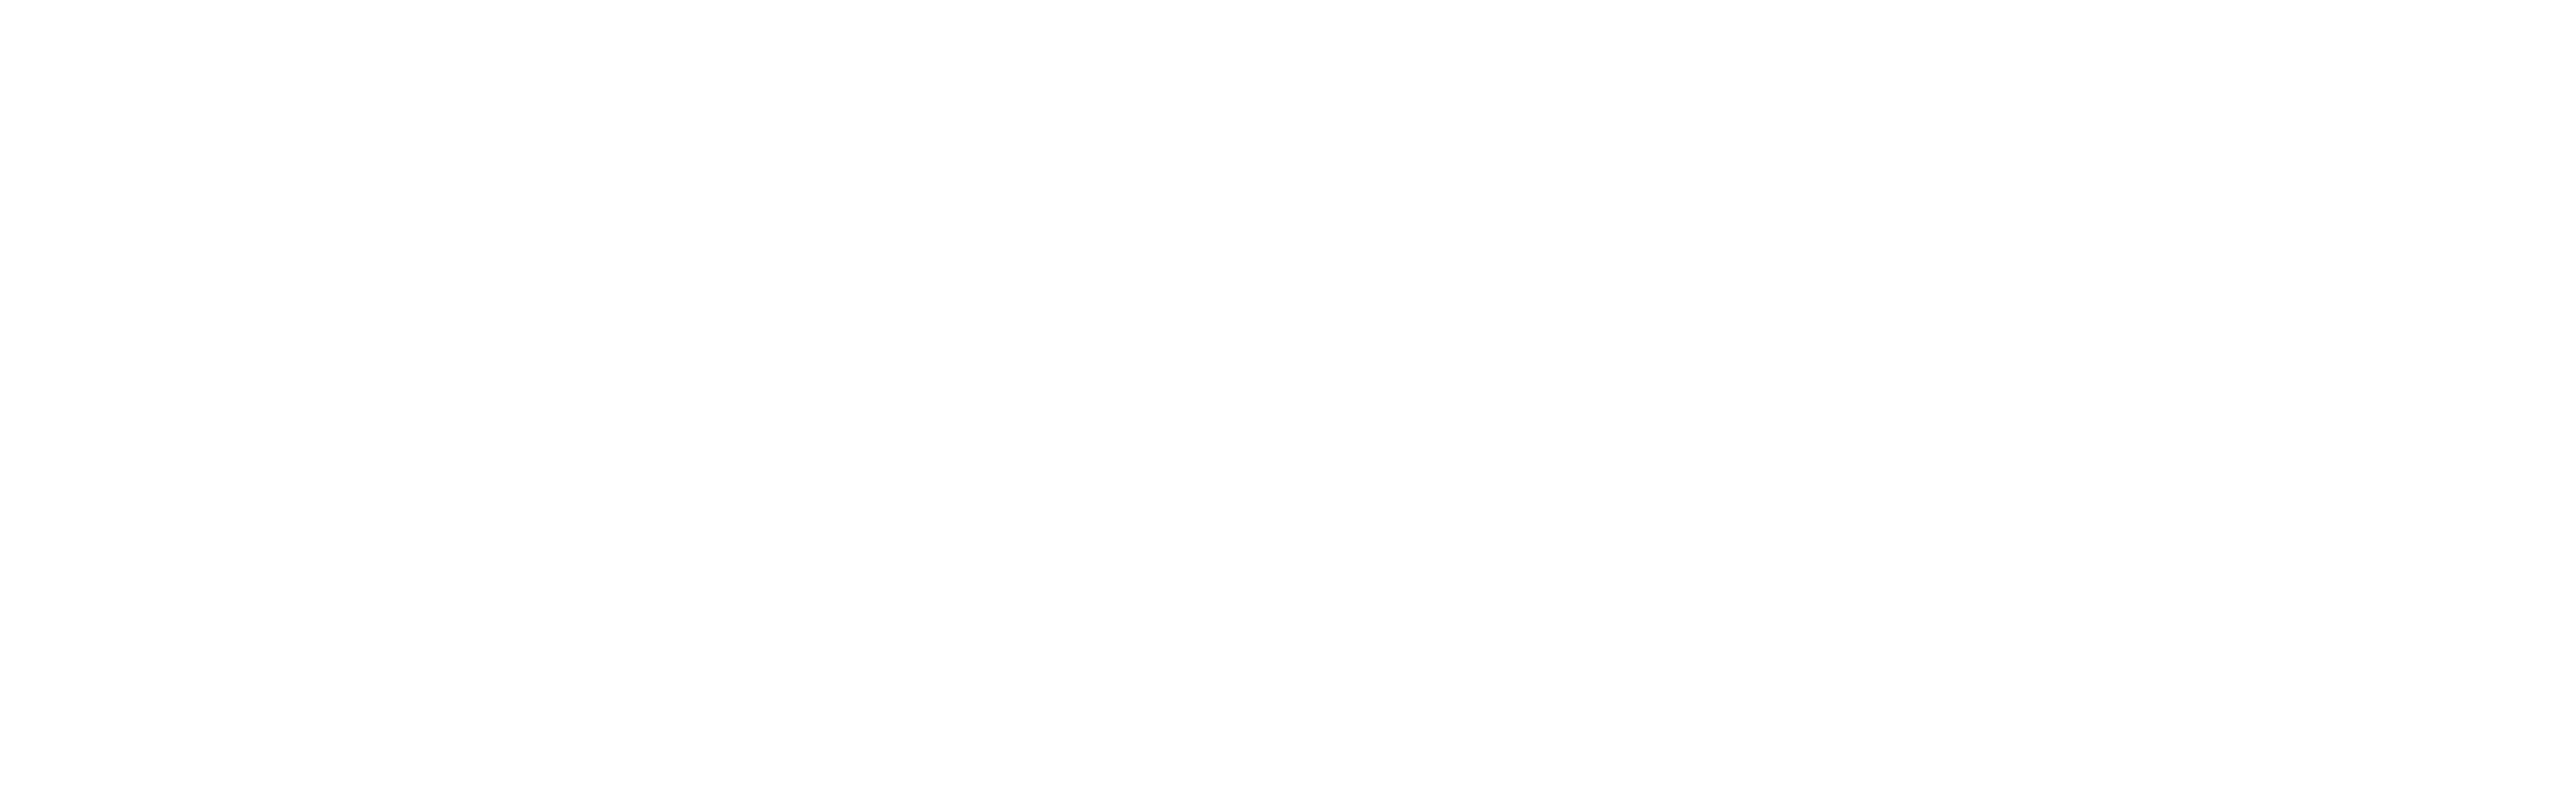 Porsche, Mercedes, Aston Martin, Koenigsegg, Ferrari, McLaren